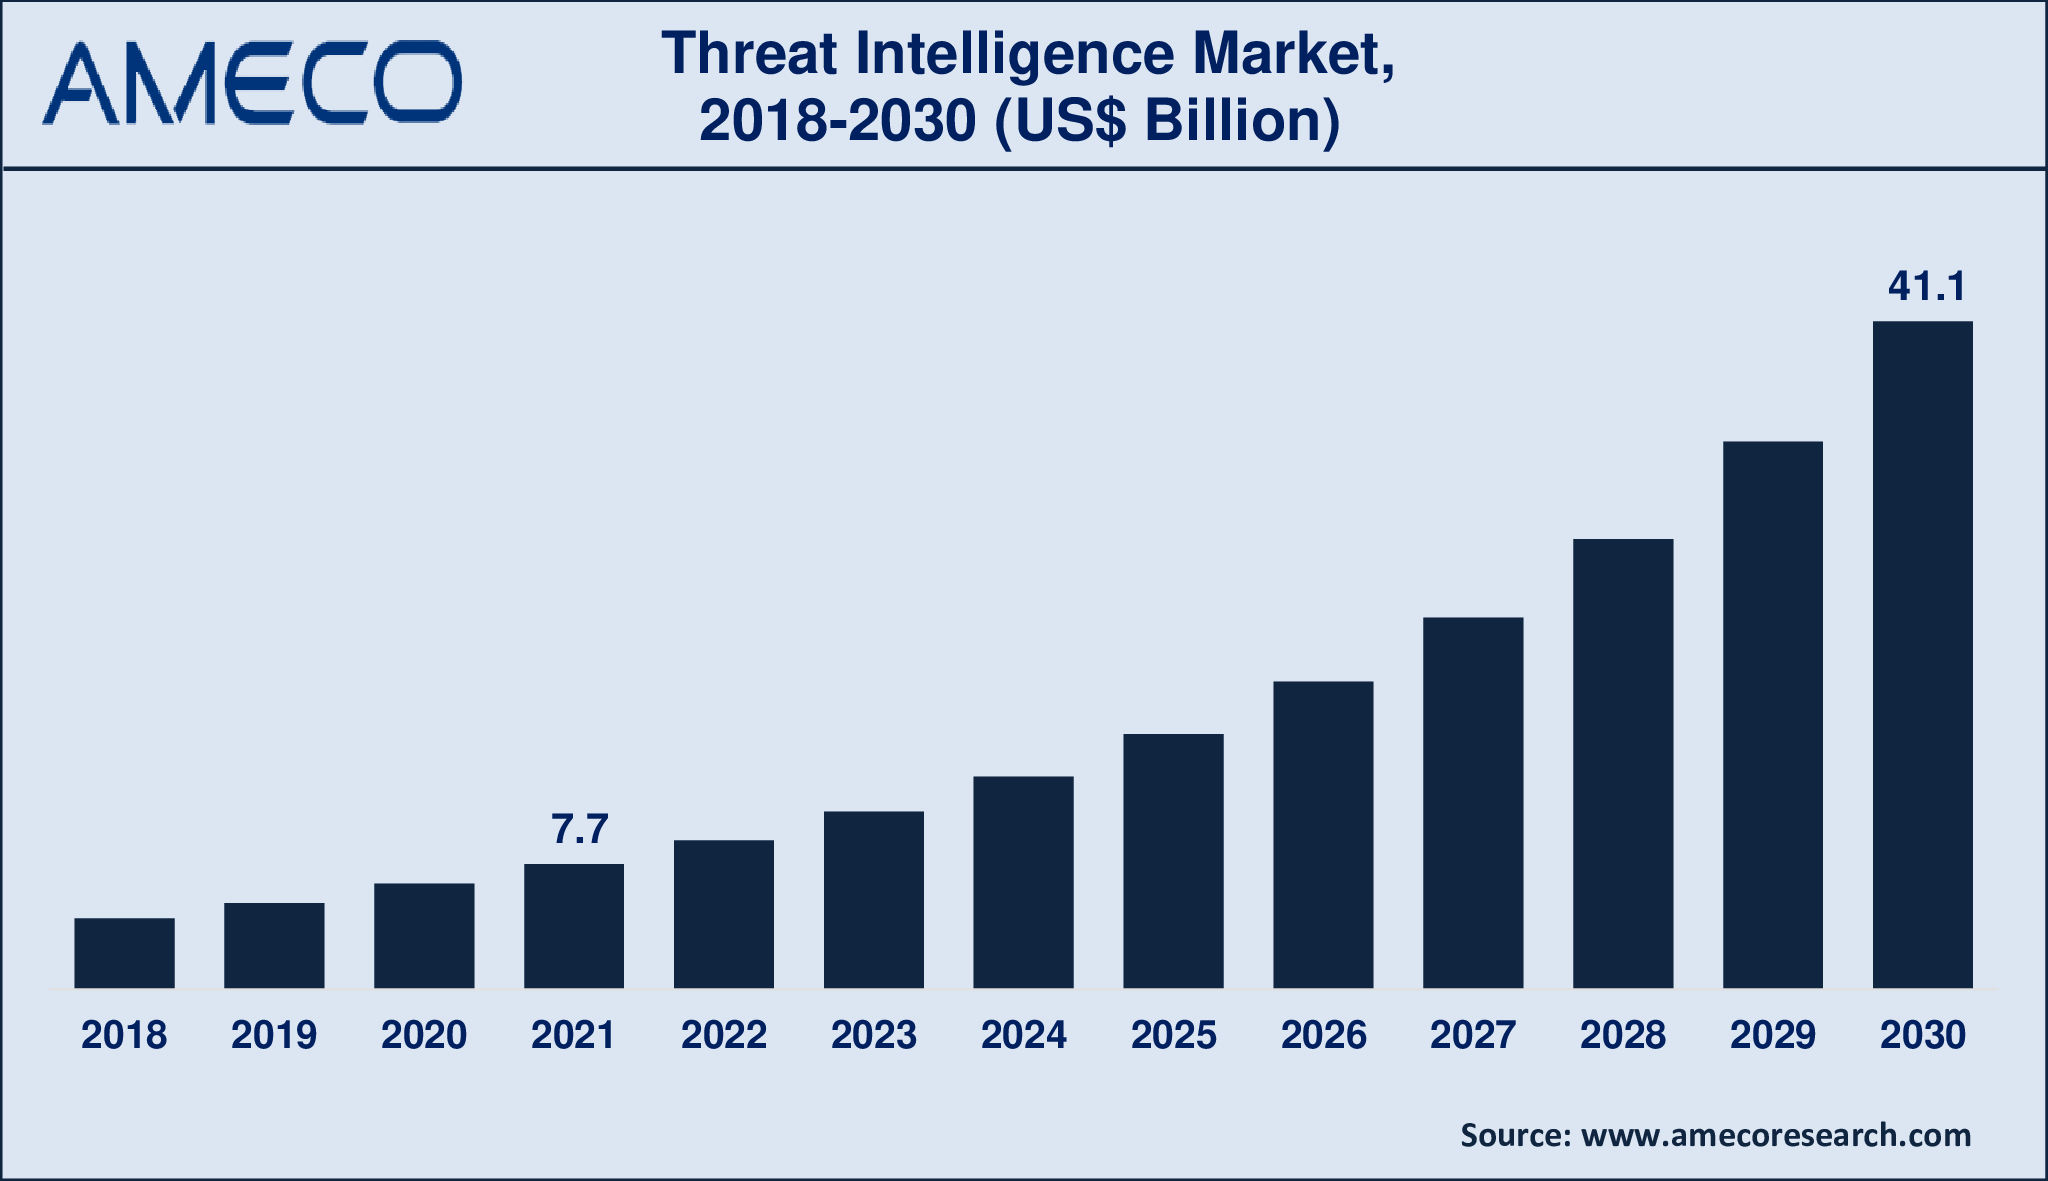 Threat Intelligence Market Dynamics